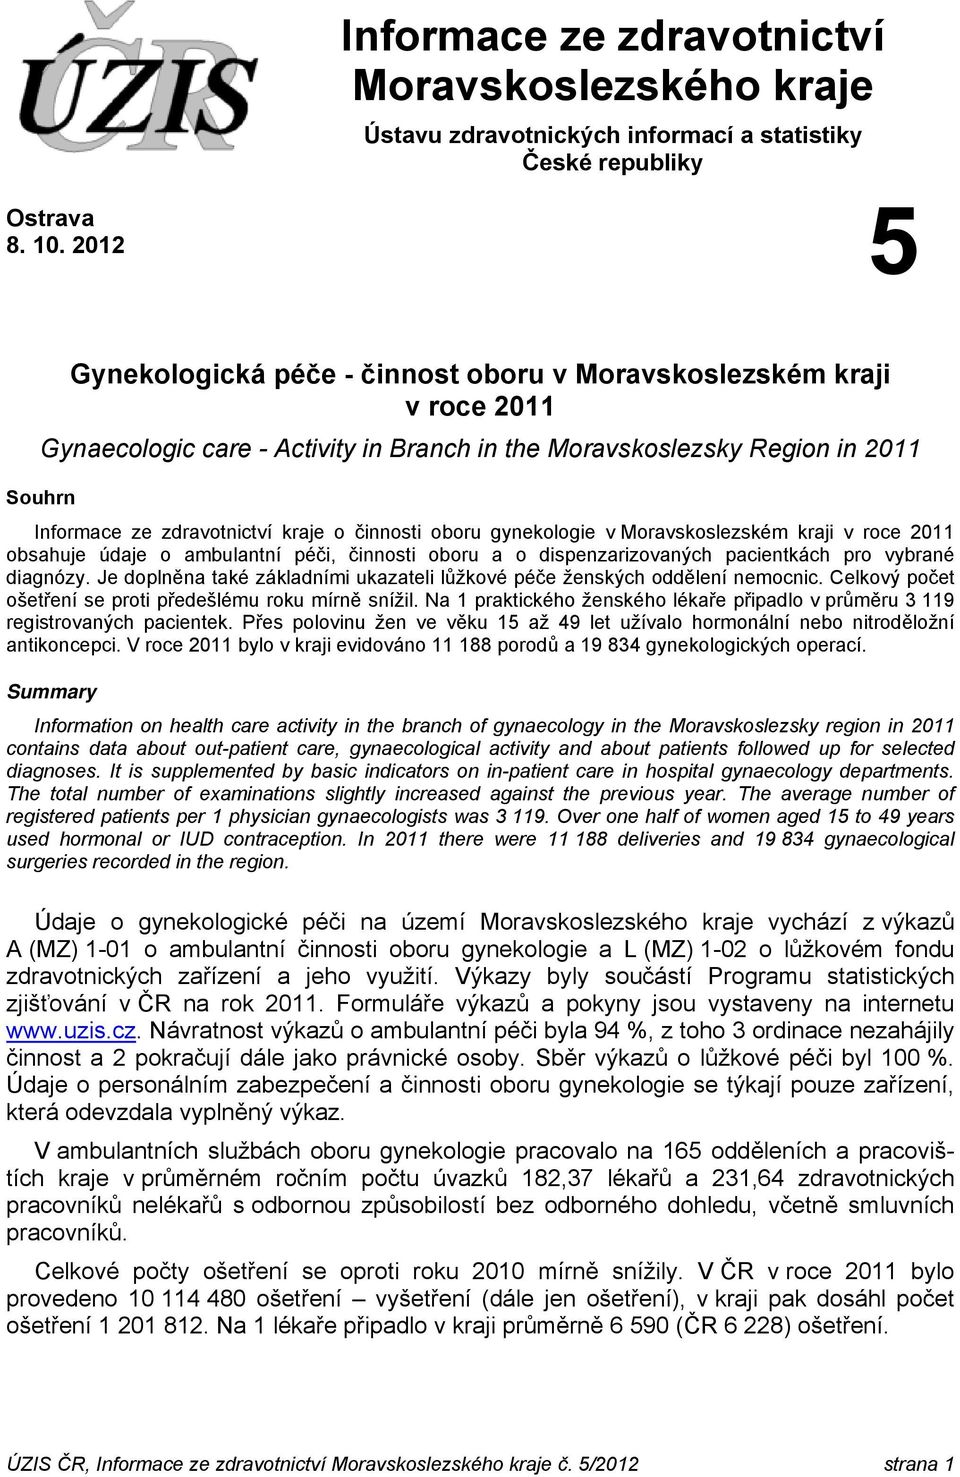 činnosti oboru gynekologie v Moravskoslezském kraji v roce 2011 obsahuje údaje o ambulantní péči, činnosti oboru a o dispenzarizovaných pacientkách pro vybrané diagnózy.